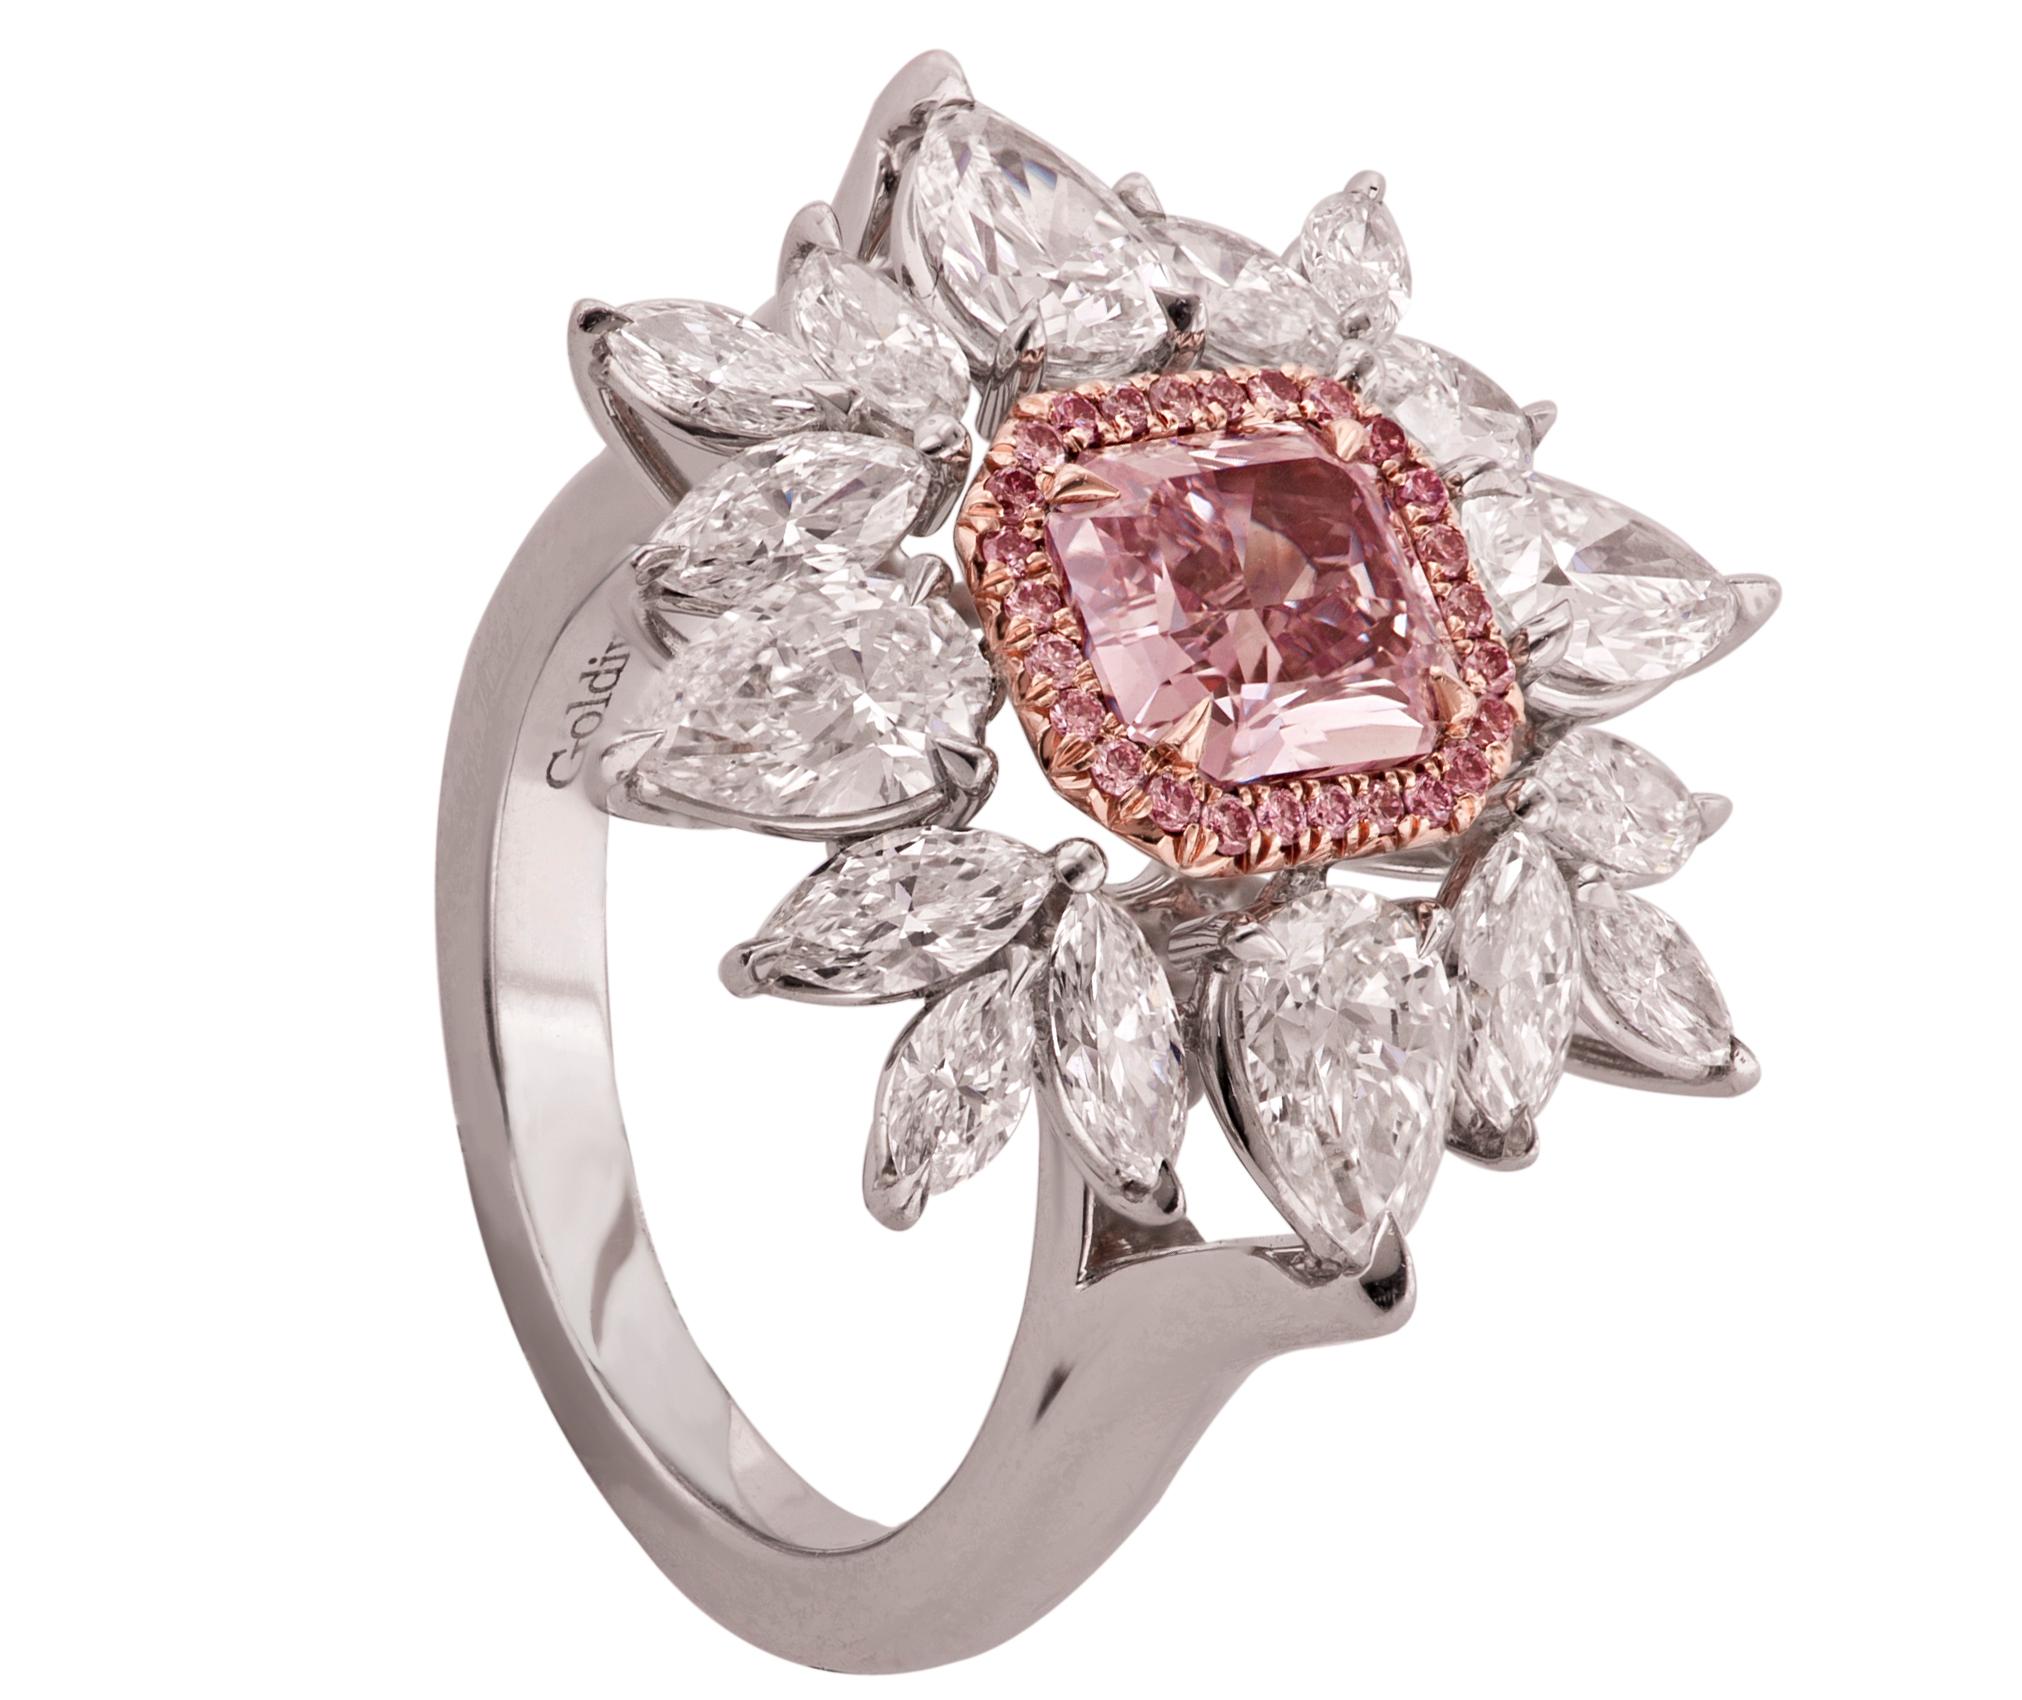 1.diamant rose pourpre de 28 CT, pureté SI1, au centre, entouré de 3,50 ct de pierres de forme marquise et poire 
